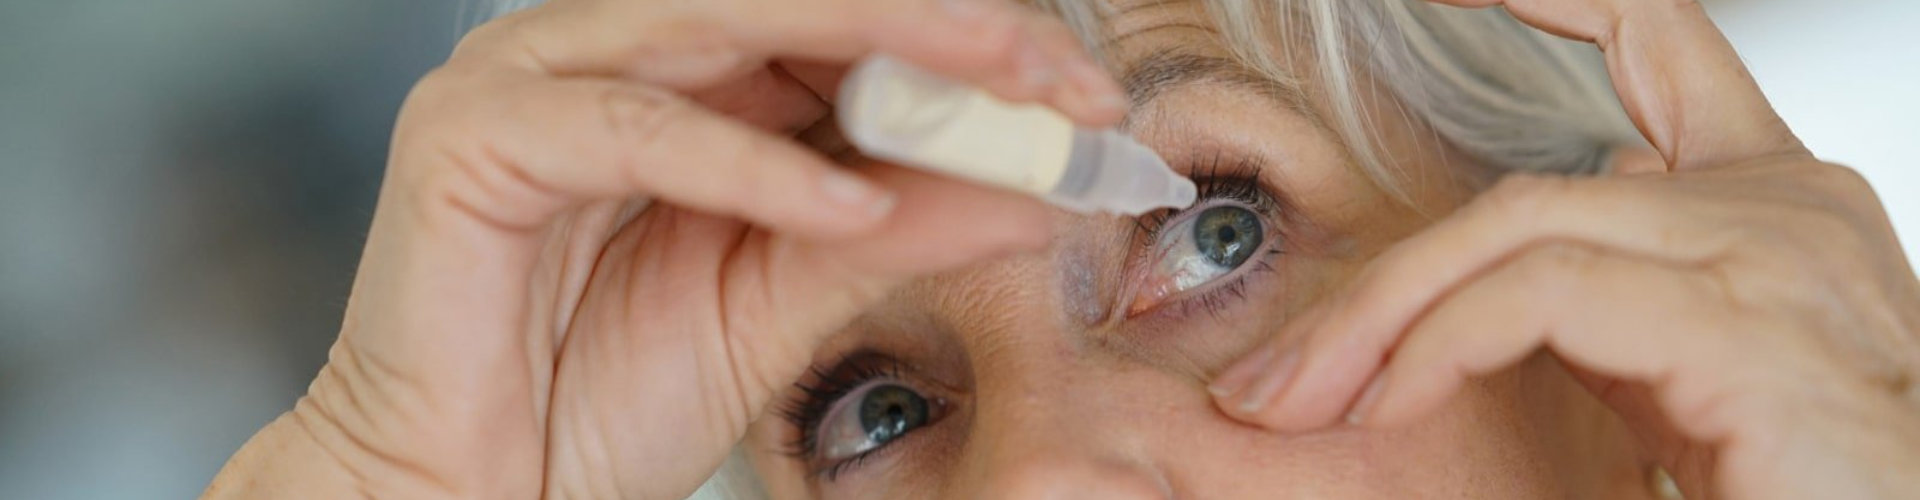 senior applying medicine on eyes